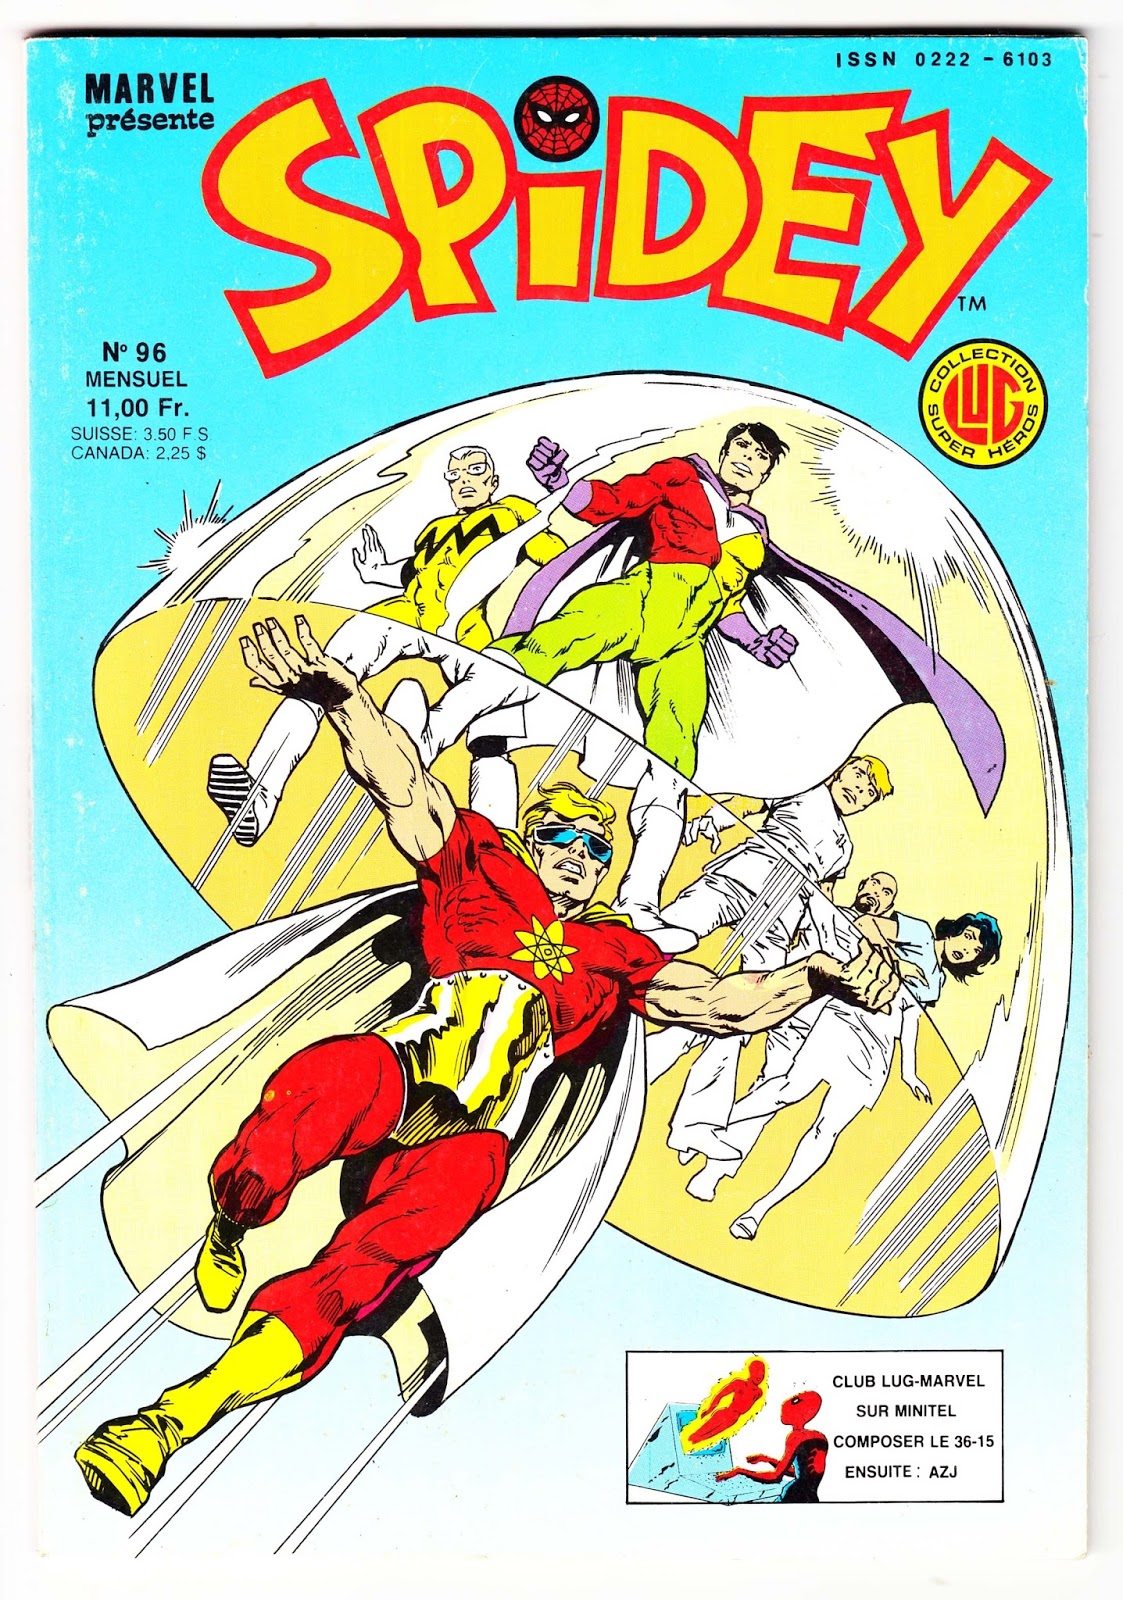 981 - Les comics que vous lisez en ce moment - Page 4 Spidey-n-96-comics-marvel